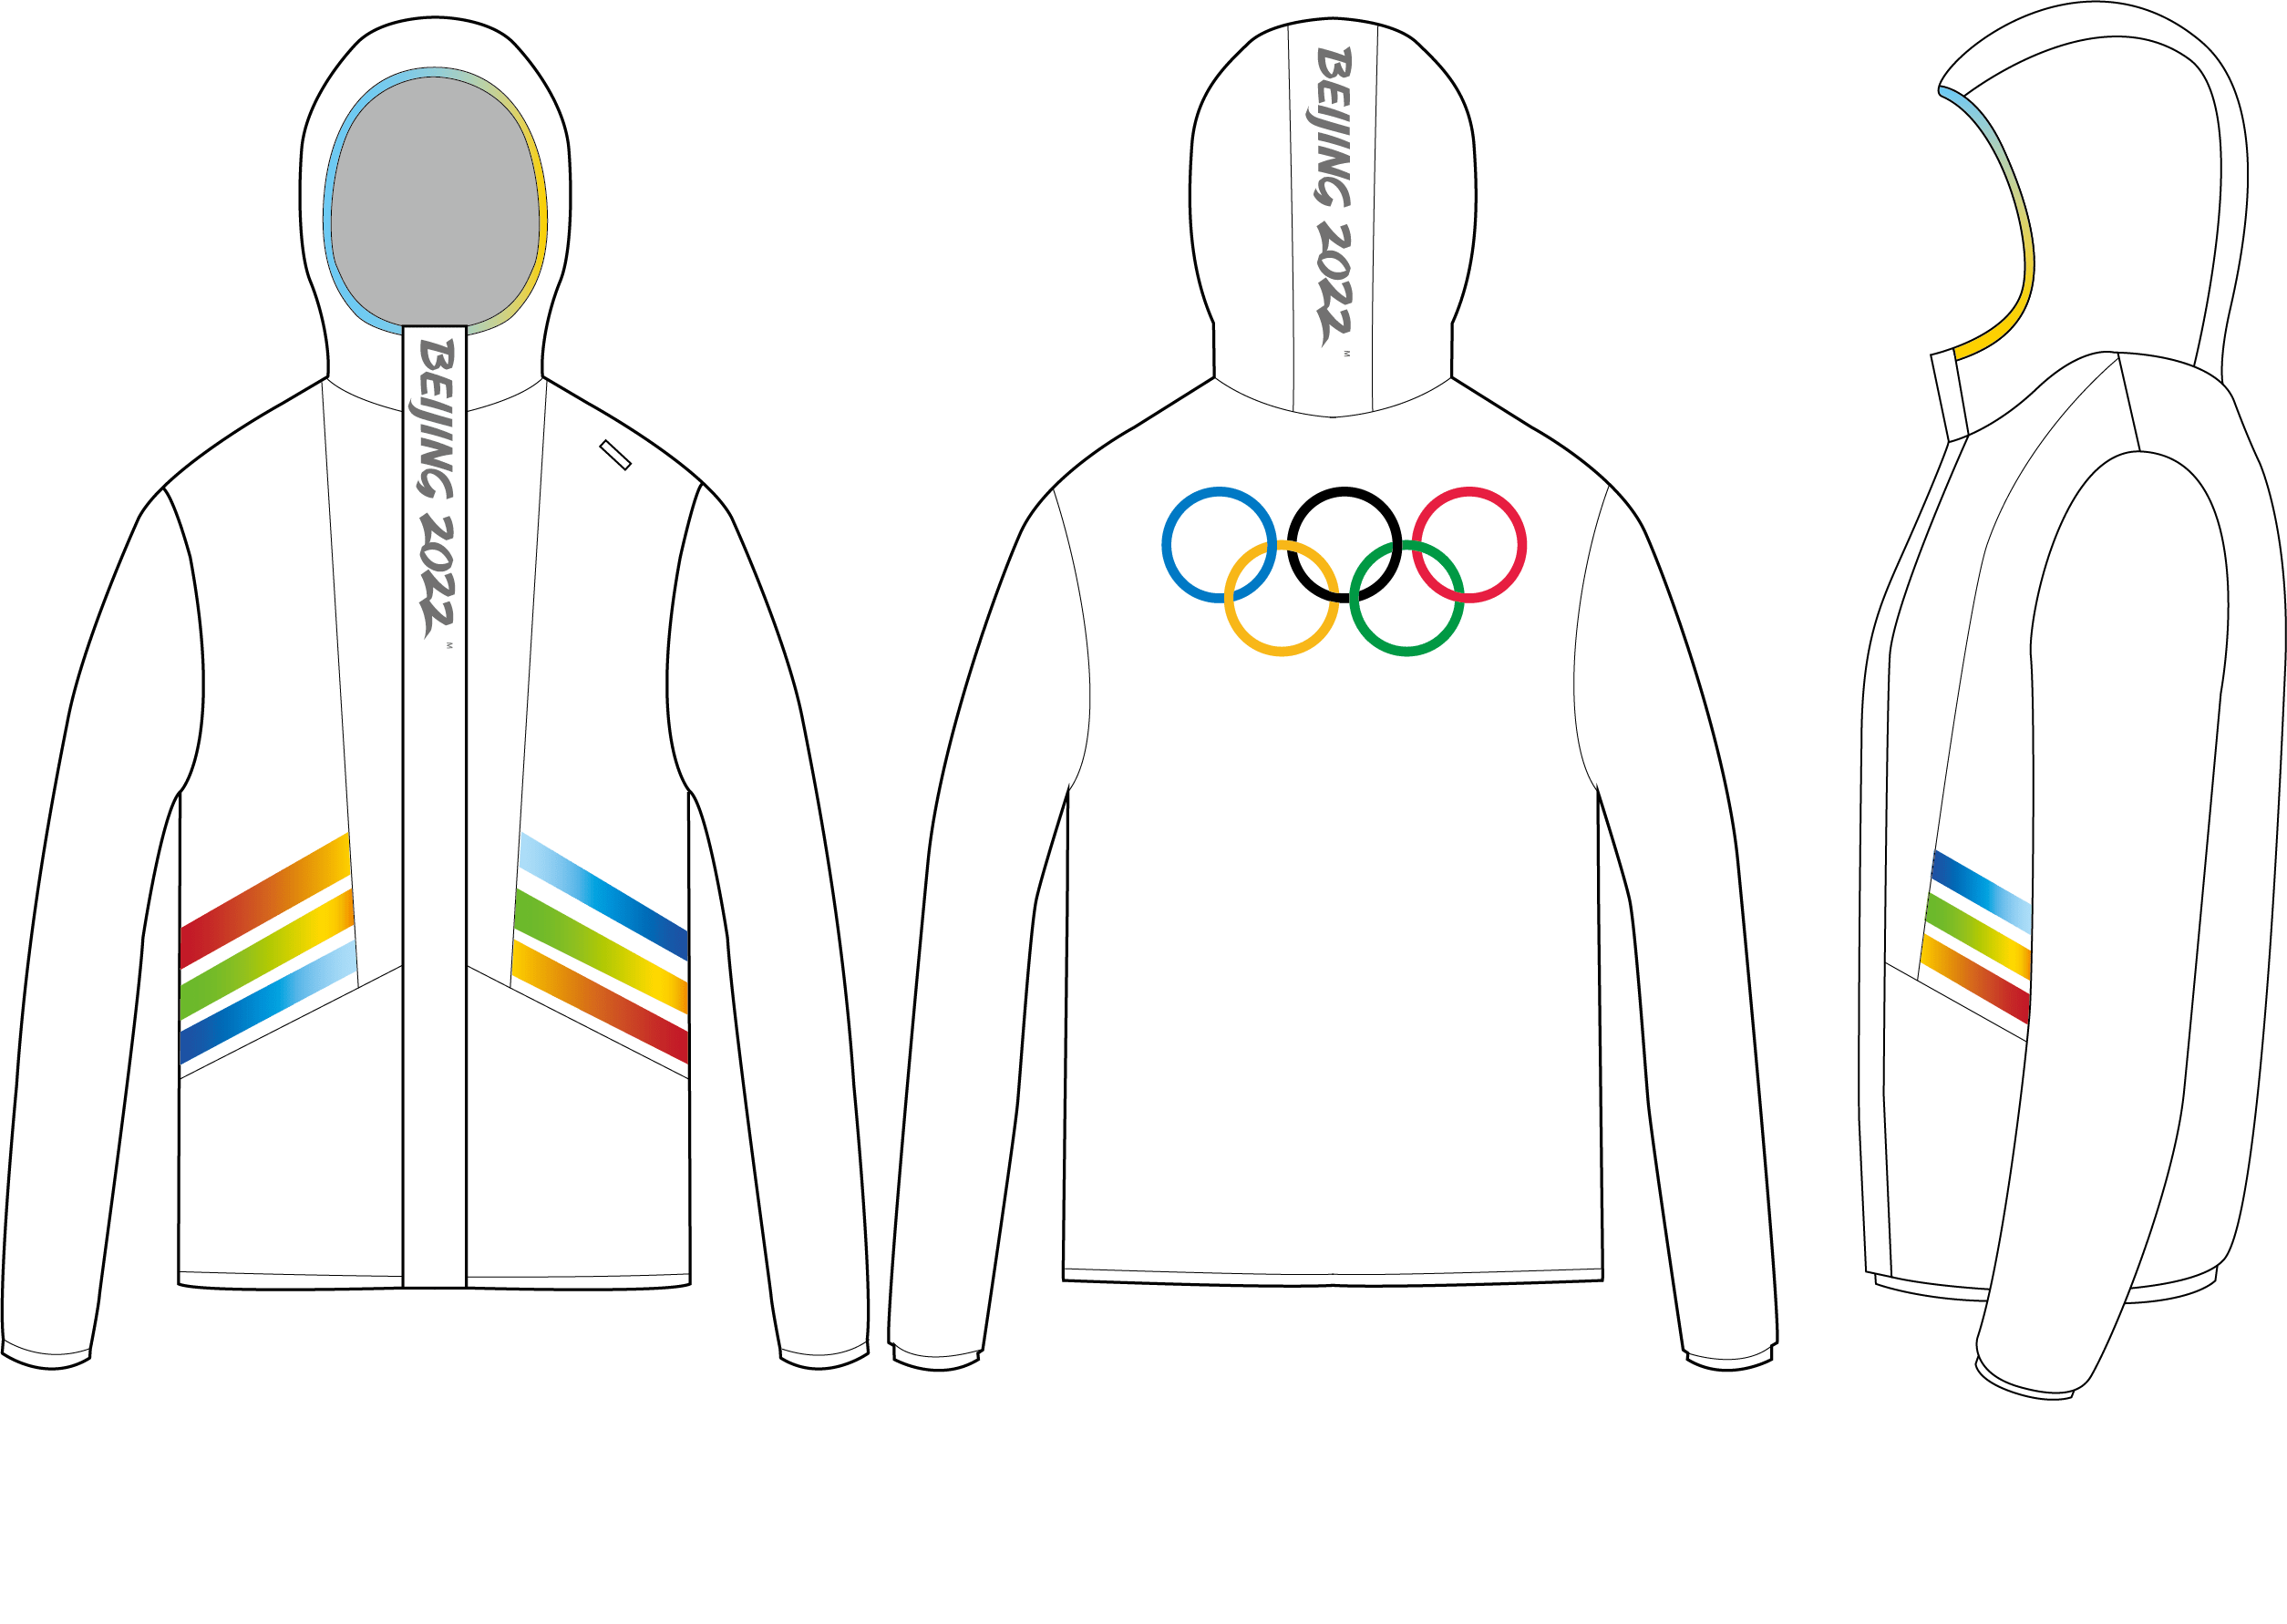 冬奥会志愿者服装设计图片